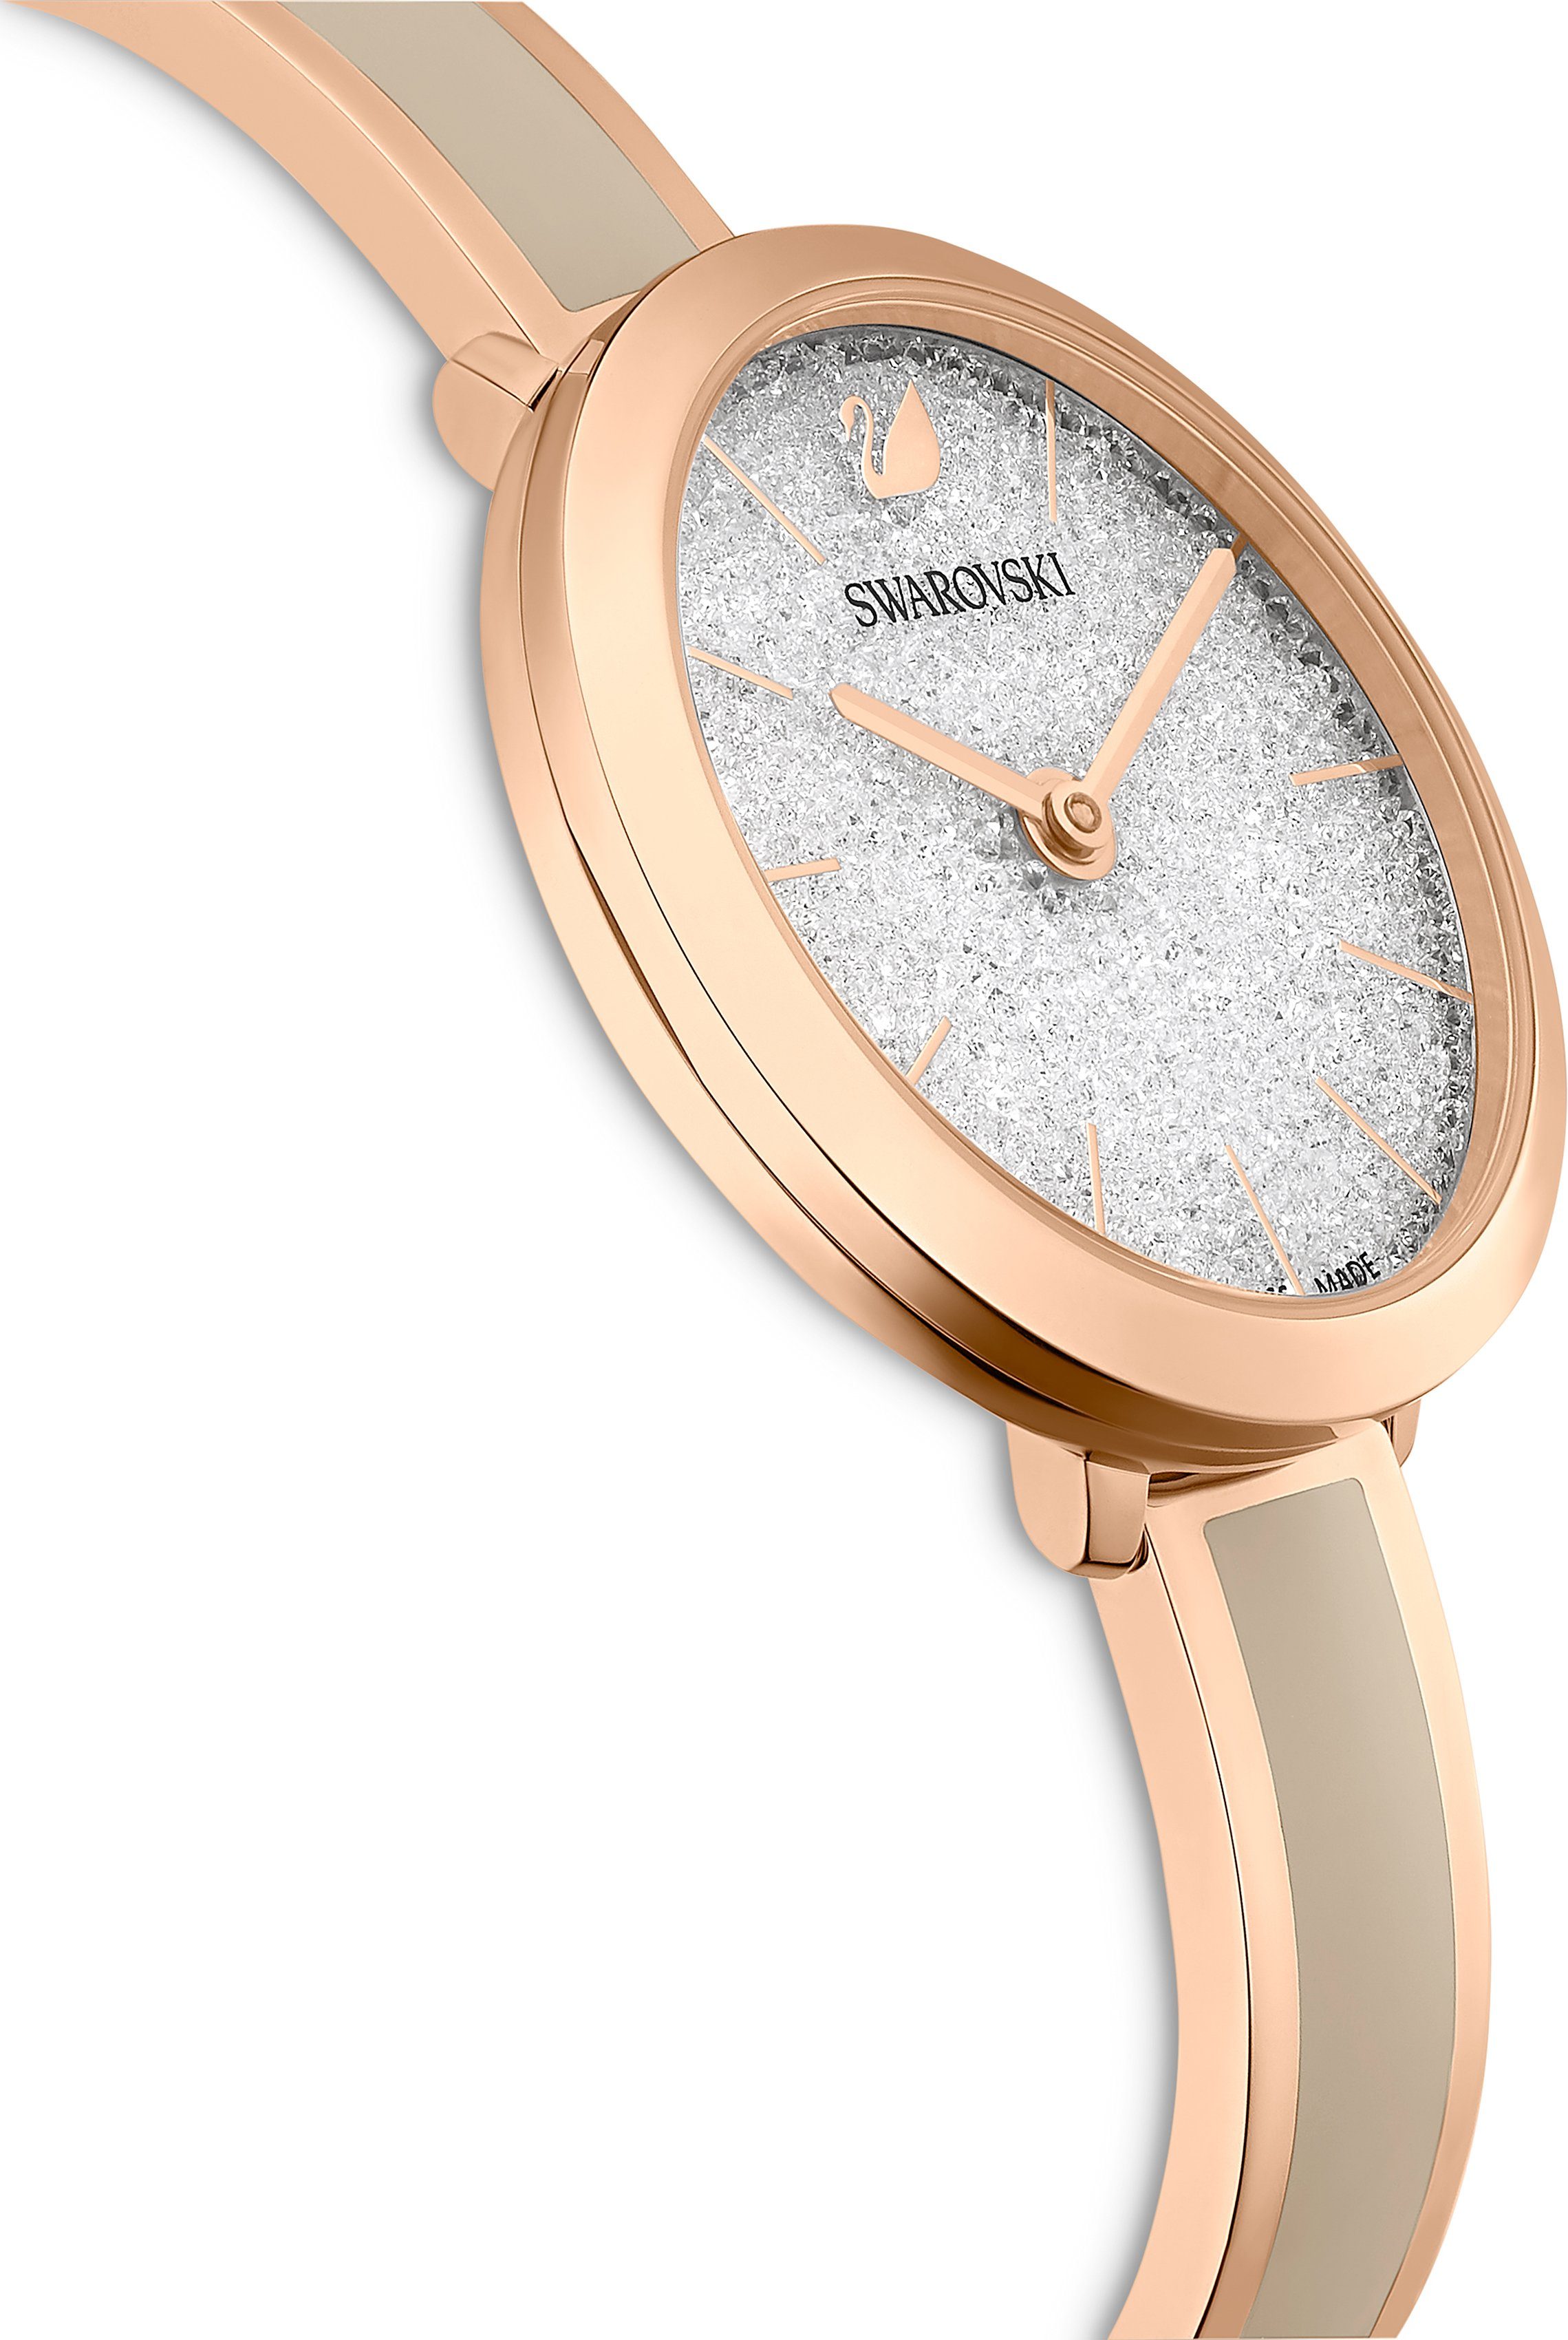 Swarovski Schweizer Uhr Crystalline Delight, 5642218